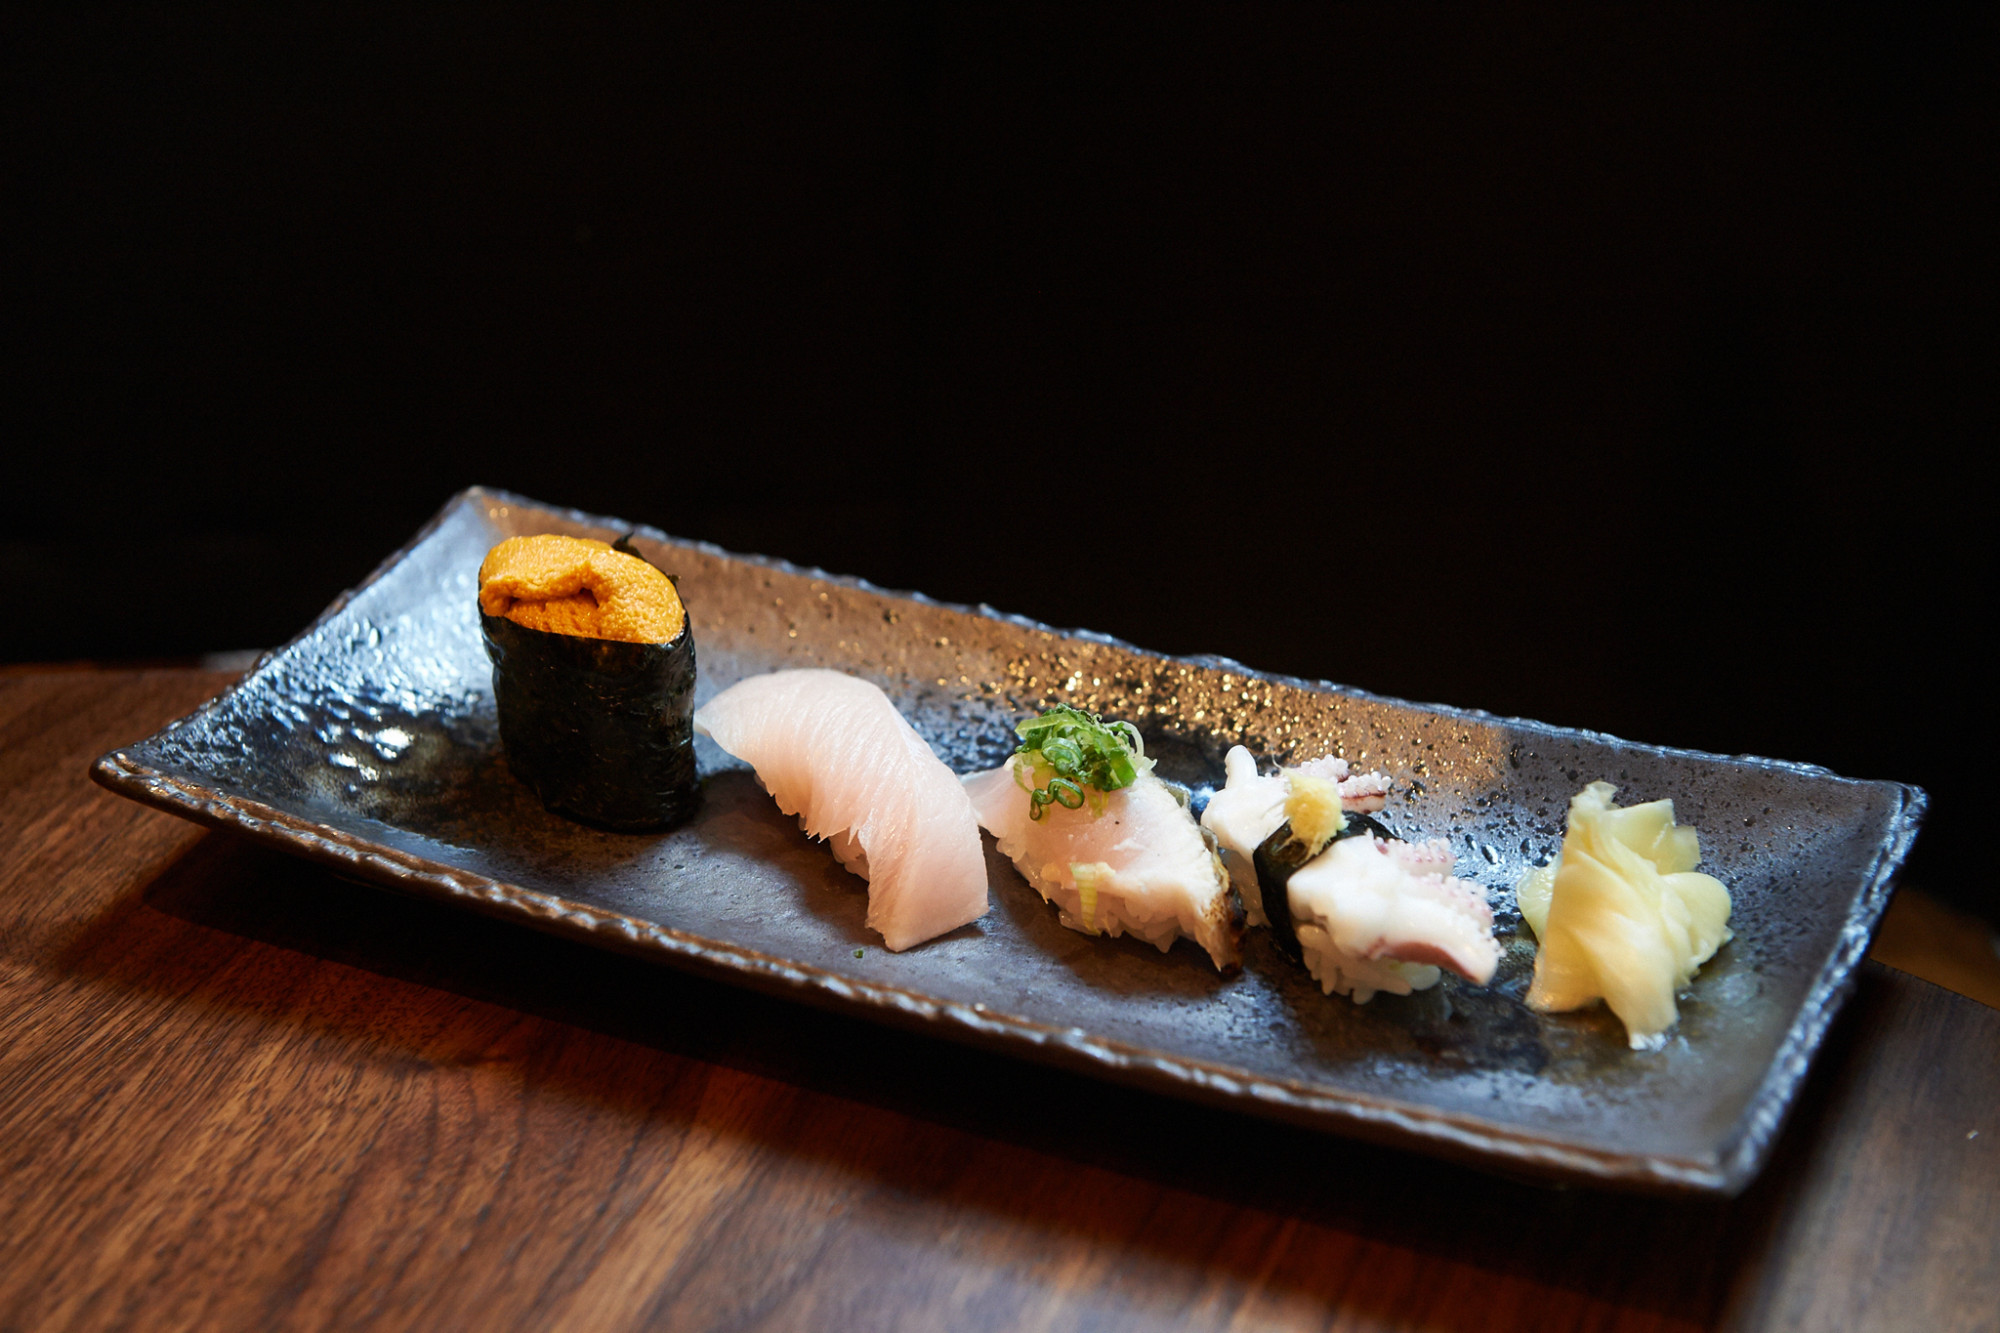 Kurumazushi, New York Bữa ăn Sushi Tín dụng hình ảnh: Kurumazushi, New York Có thể có rất nhiều cửa hàng sushi ở Manhattan, New York, nhưng người sáng lập kiêm bếp trưởng Toshihiro Uezu chuyên mang đến cho những người sành ăn sushi những kết cấu và hương vị đích thực. Khóa học Omakase 'Tuyển chọn Sushi và Sashimi của đầu bếp' của họ bắt đầu từ 300 USD (khoảng 24.000 INR) và bữa ăn sushi thông thường của họ bắt đầu từ 150 USD trở lên và bao gồm chín miếng và một cuộn sushi.